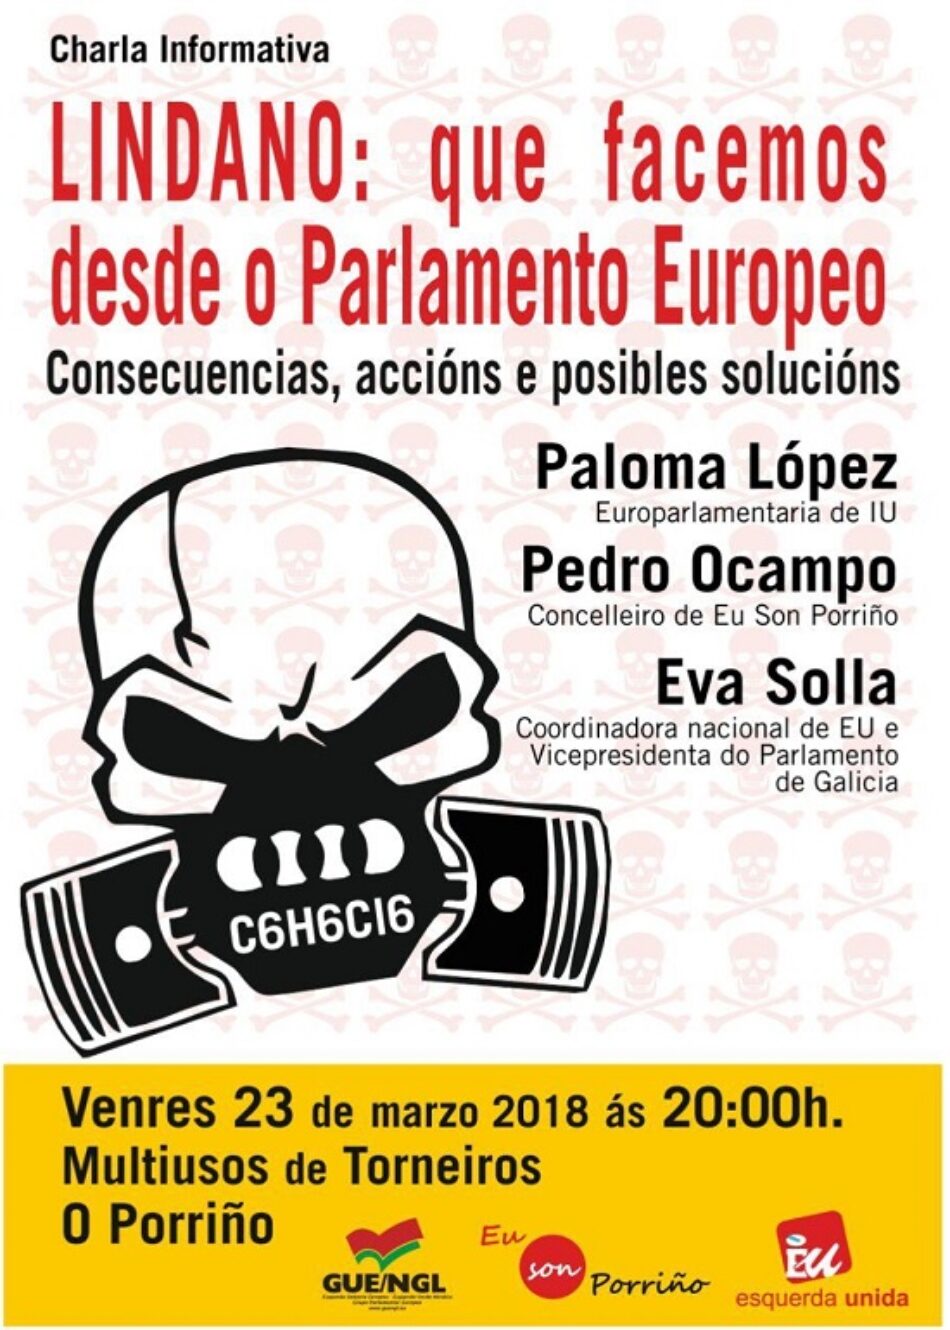 Eva Solla presenta a charla: “Lindano, que facemos dende o Parlamento Europeo”, que contará coa presenza da Eurodeputada de Izquierda Unida Paloma López